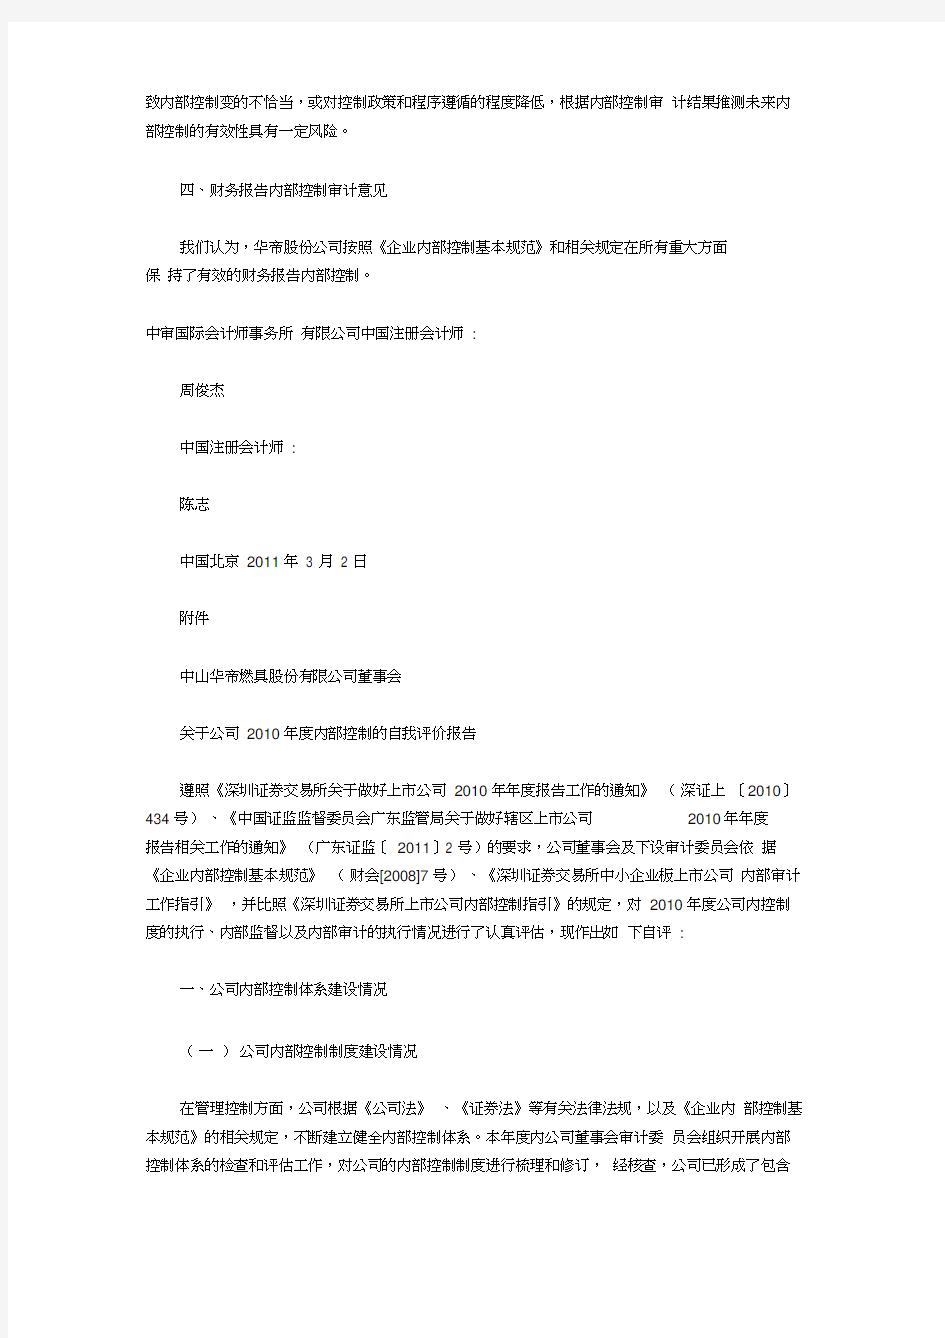 华帝股份内部控制审计报告(20210313213343)